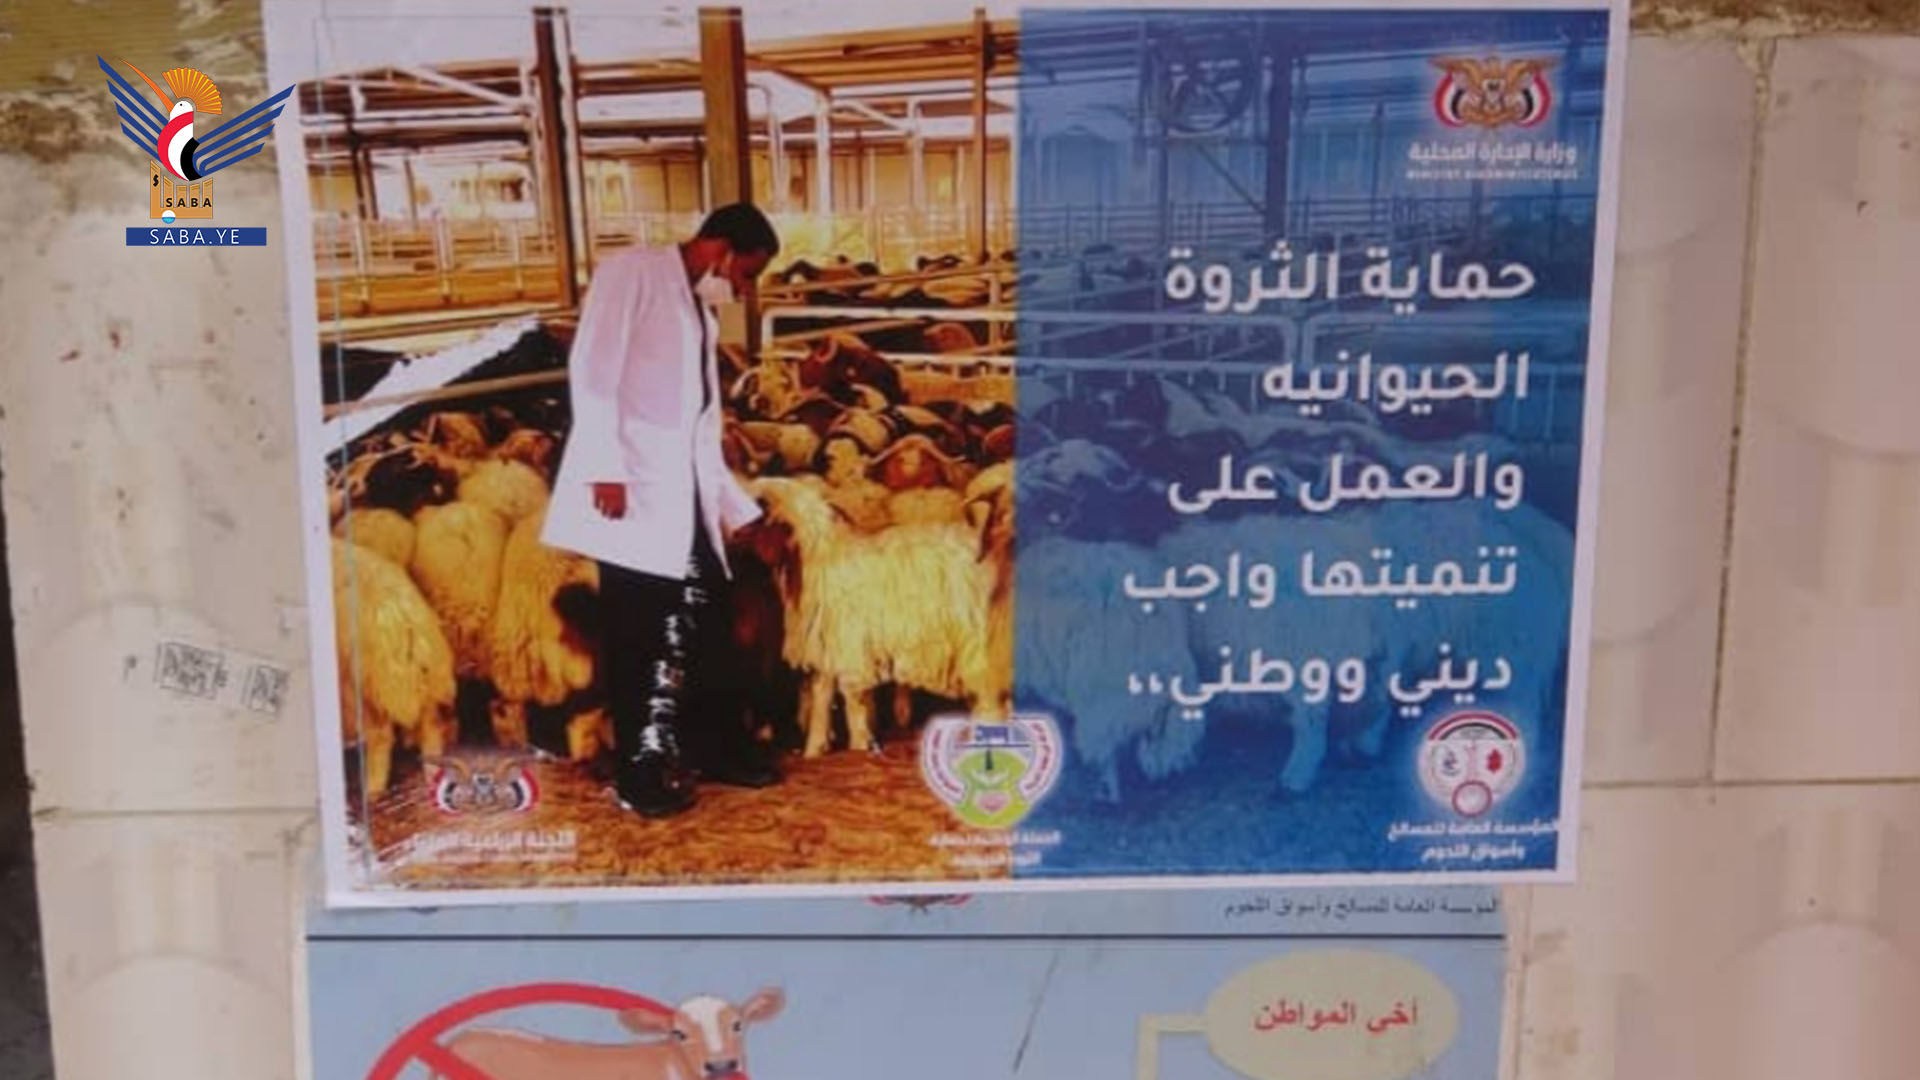 نزول ميداني بمديرية عبس ضمن الحملة الوطنية لحماية الثروة الحيوانية